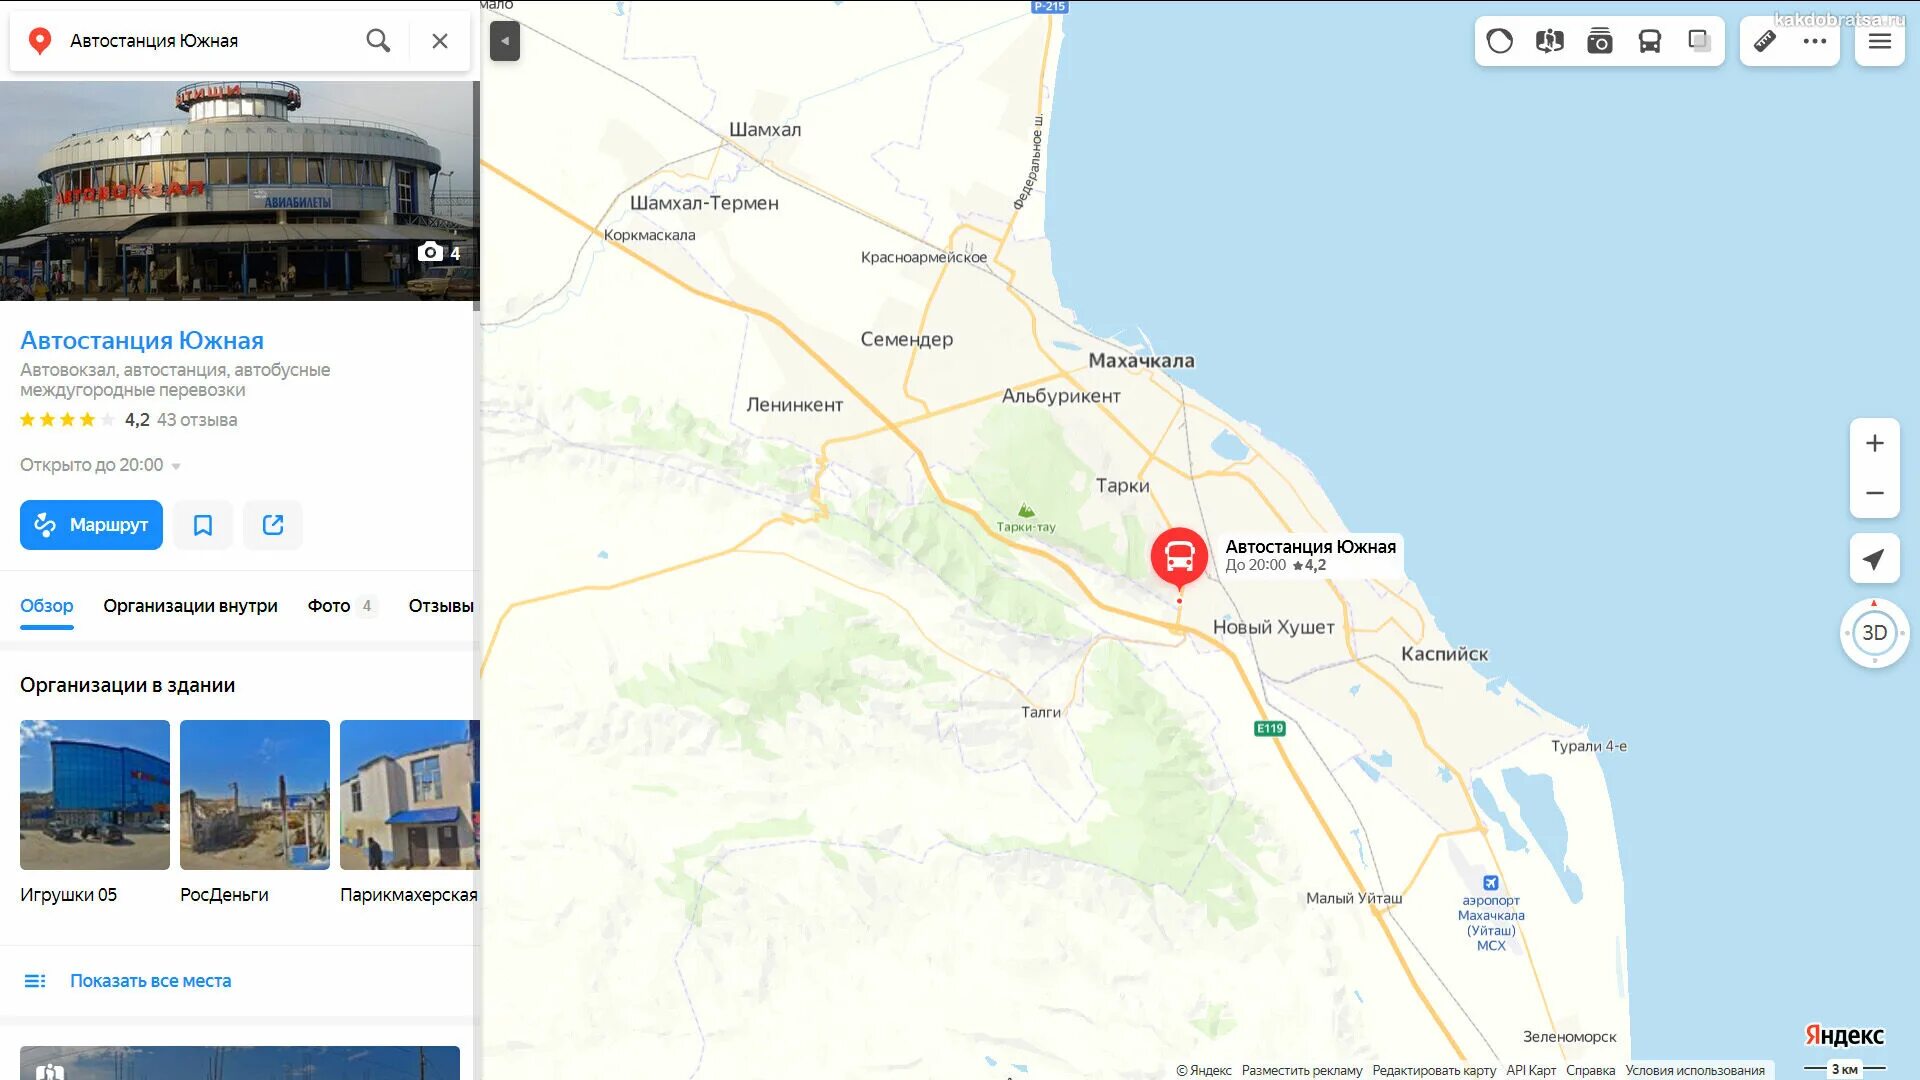 Сколько аэропортов в махачкале. Махачкала автовокзал Северный на карте. Номер Южной автостанции Махачкала. Северная автостанция Махачкала. Аэропорт Махачкала на карте.